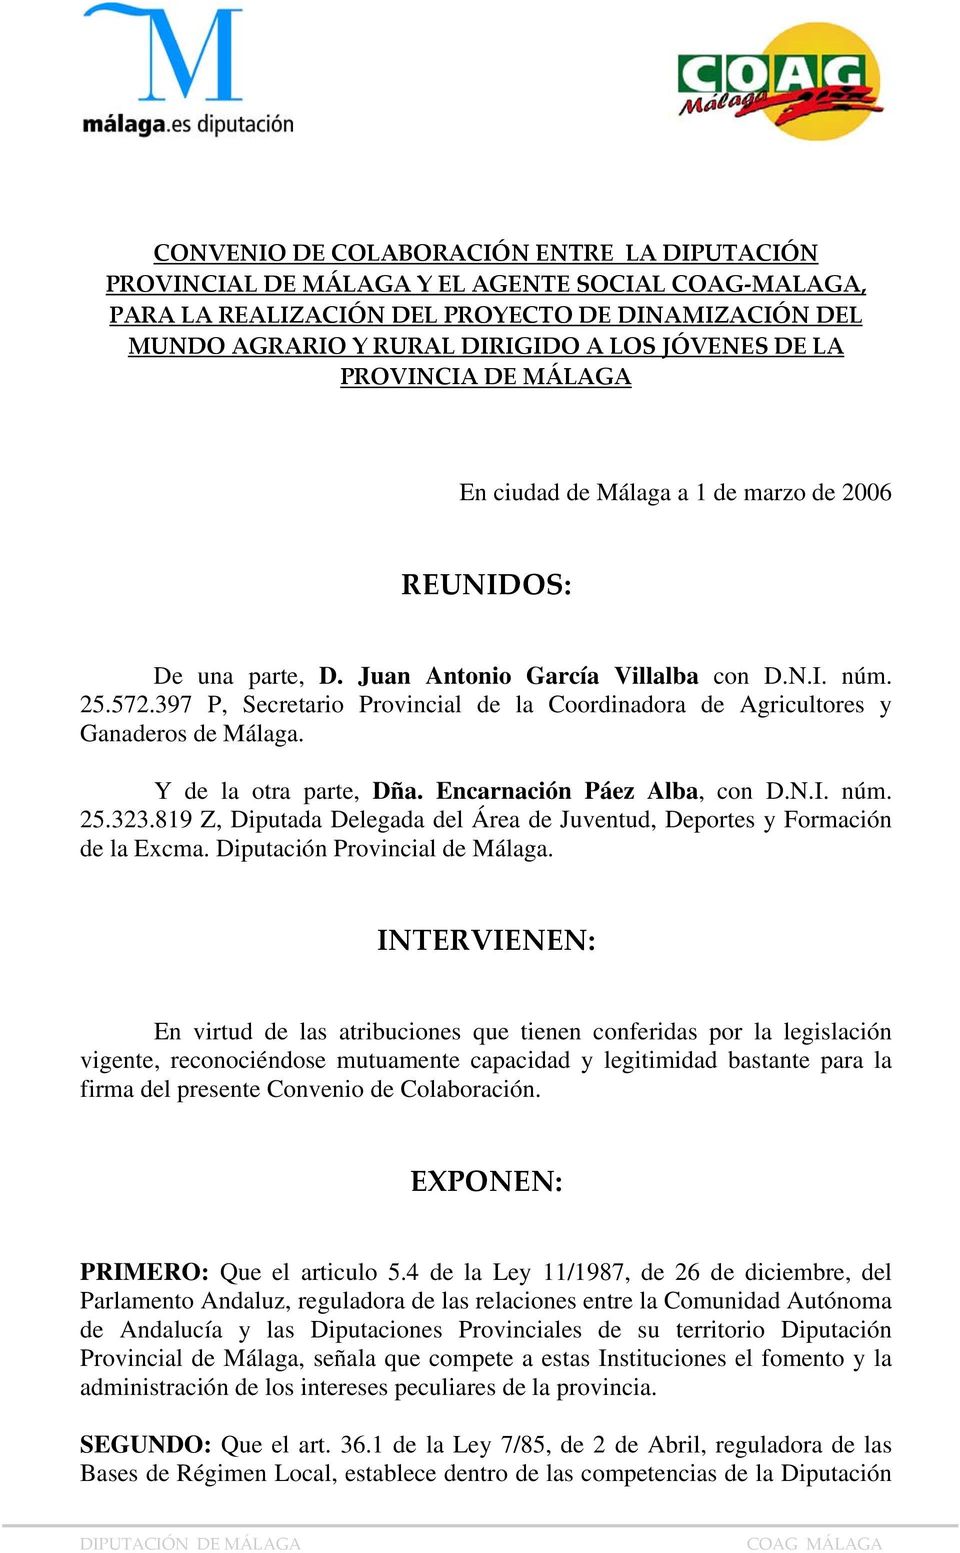 397 P, Secretario Provincial de la Coordinadora de Agricultores y Ganaderos de Málaga. Y de la otra parte, Dña. Encarnación Páez Alba, con D.N.I. núm. 25.323.